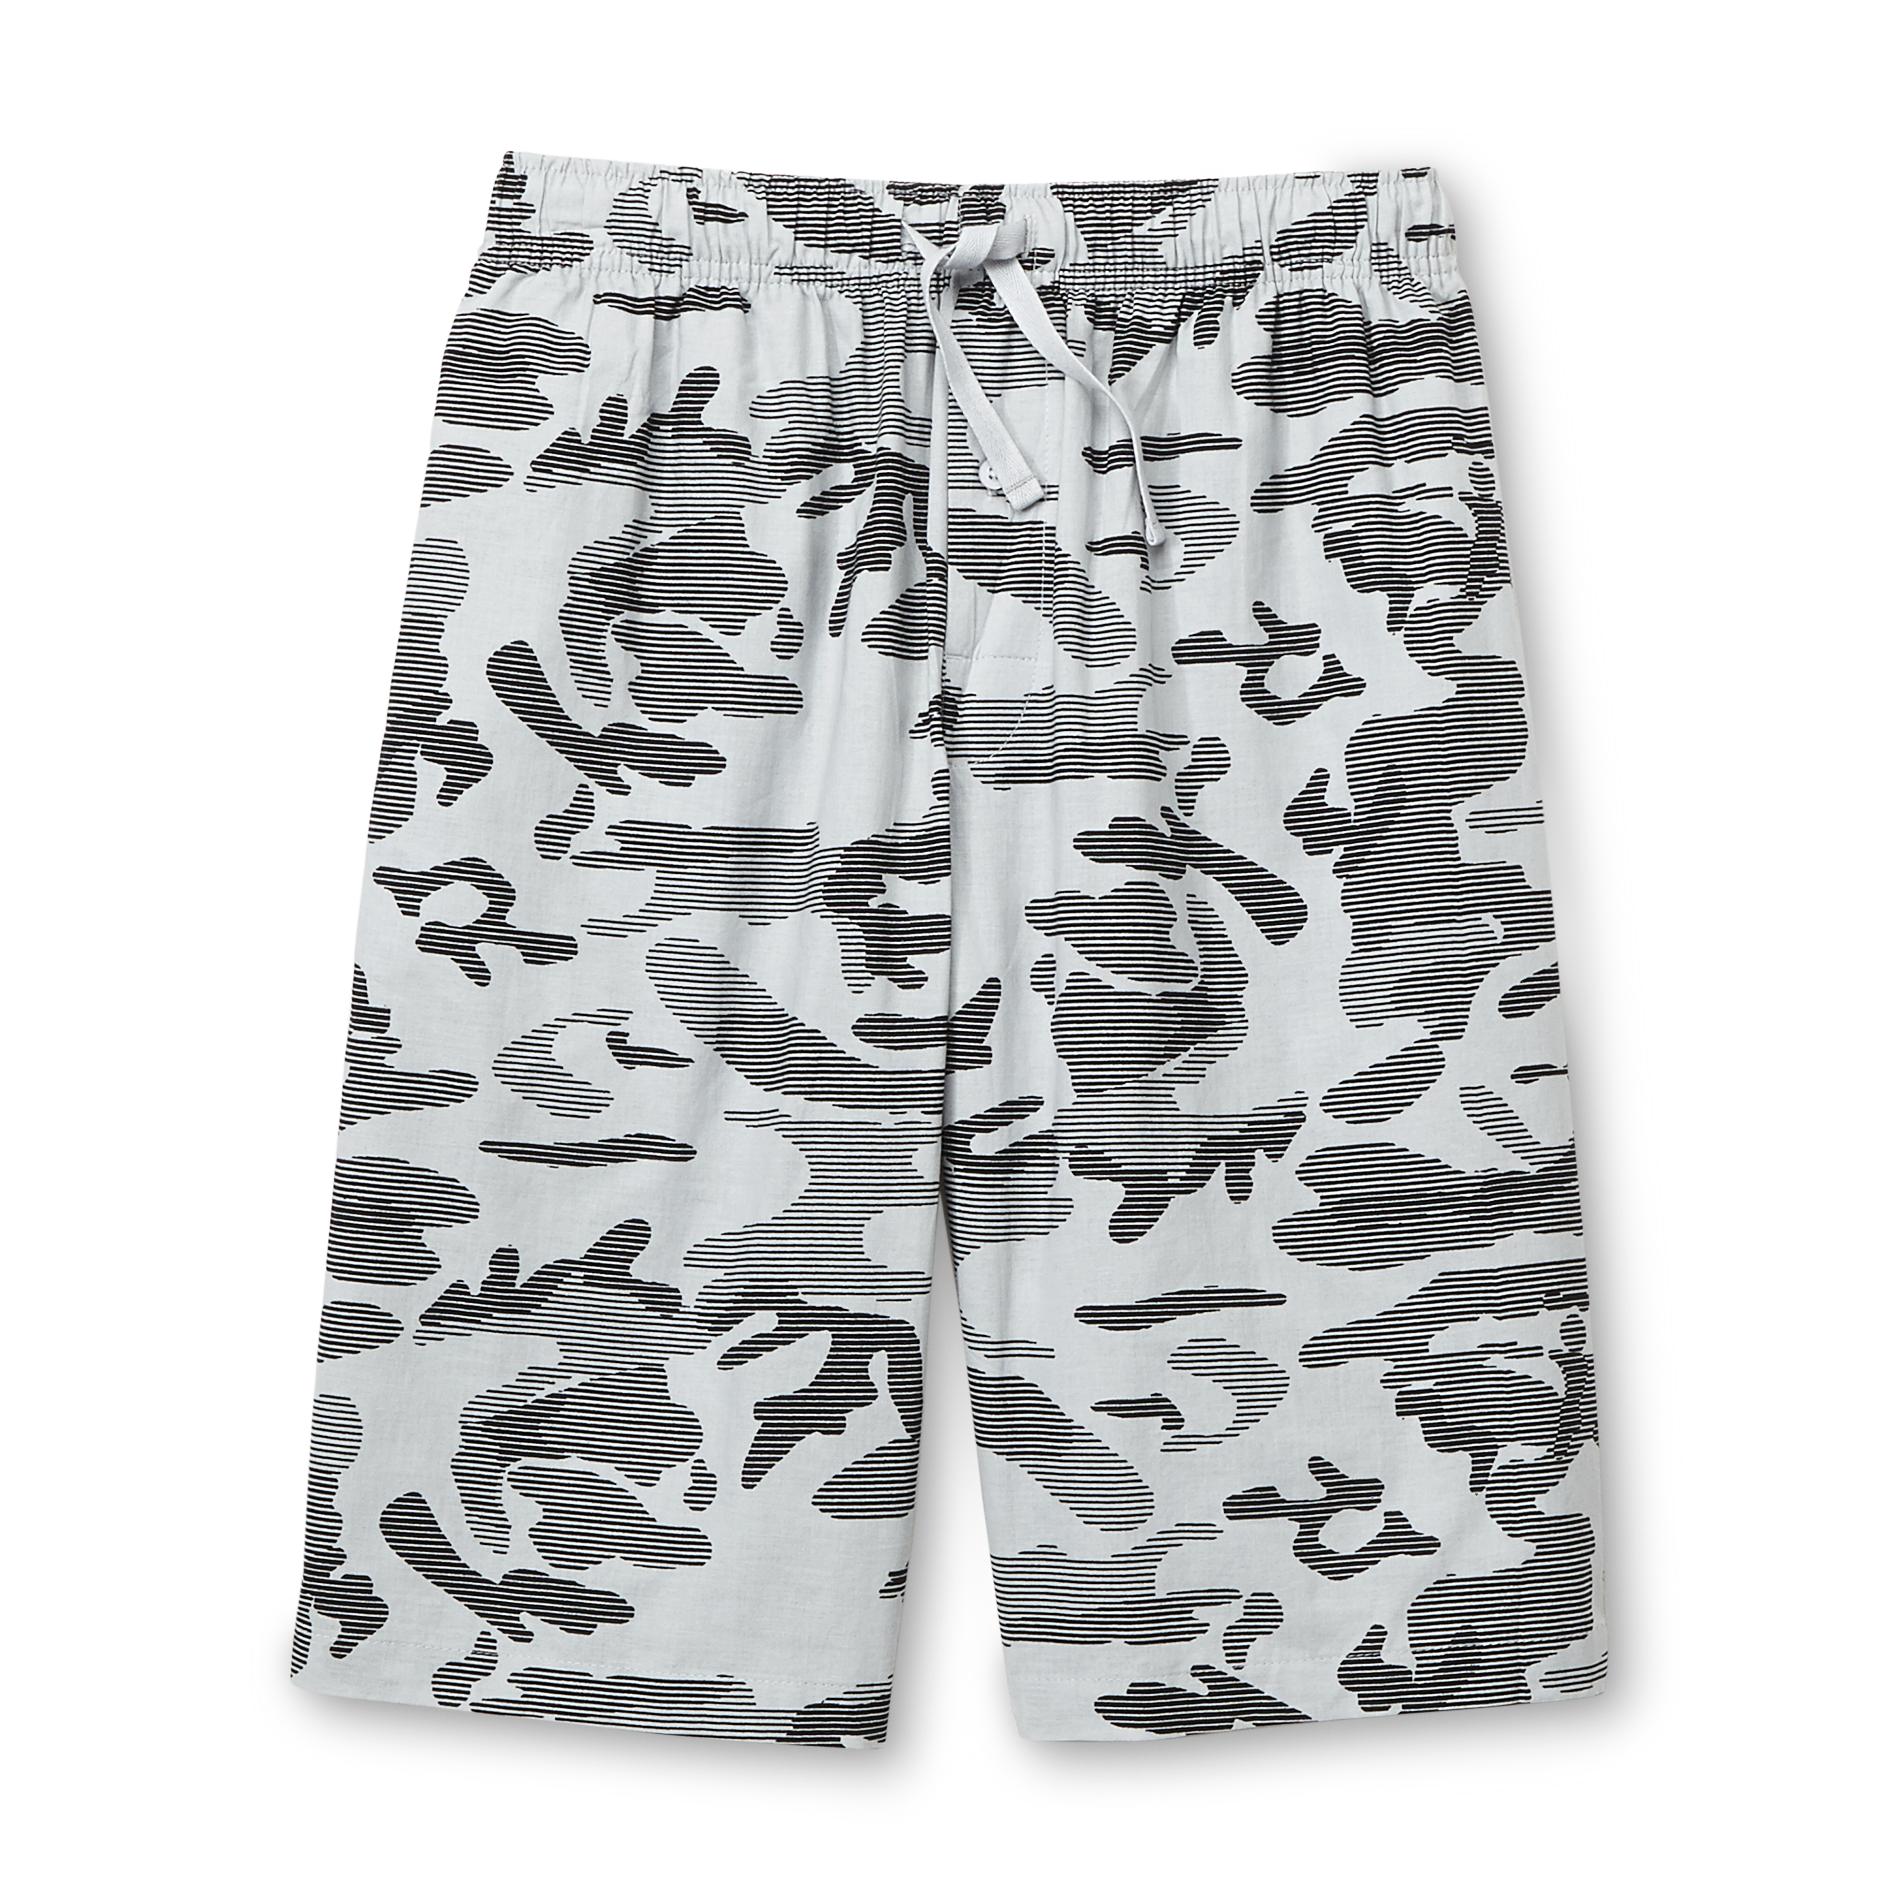 Basic Editions Men's Sleep Shorts - Camouflage